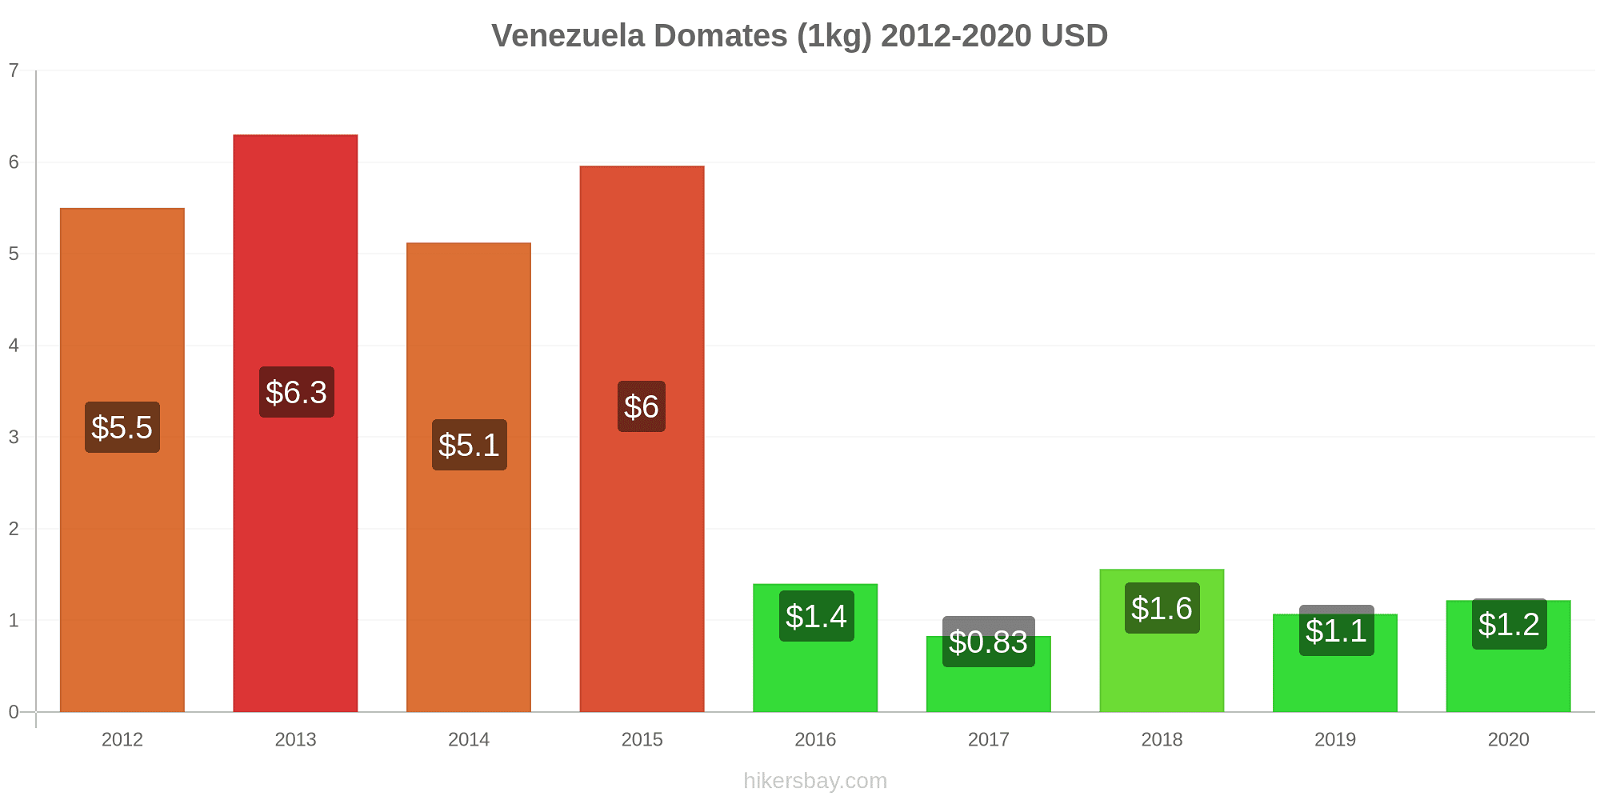 Venezuela fiyat değişiklikleri Domates (1kg) hikersbay.com